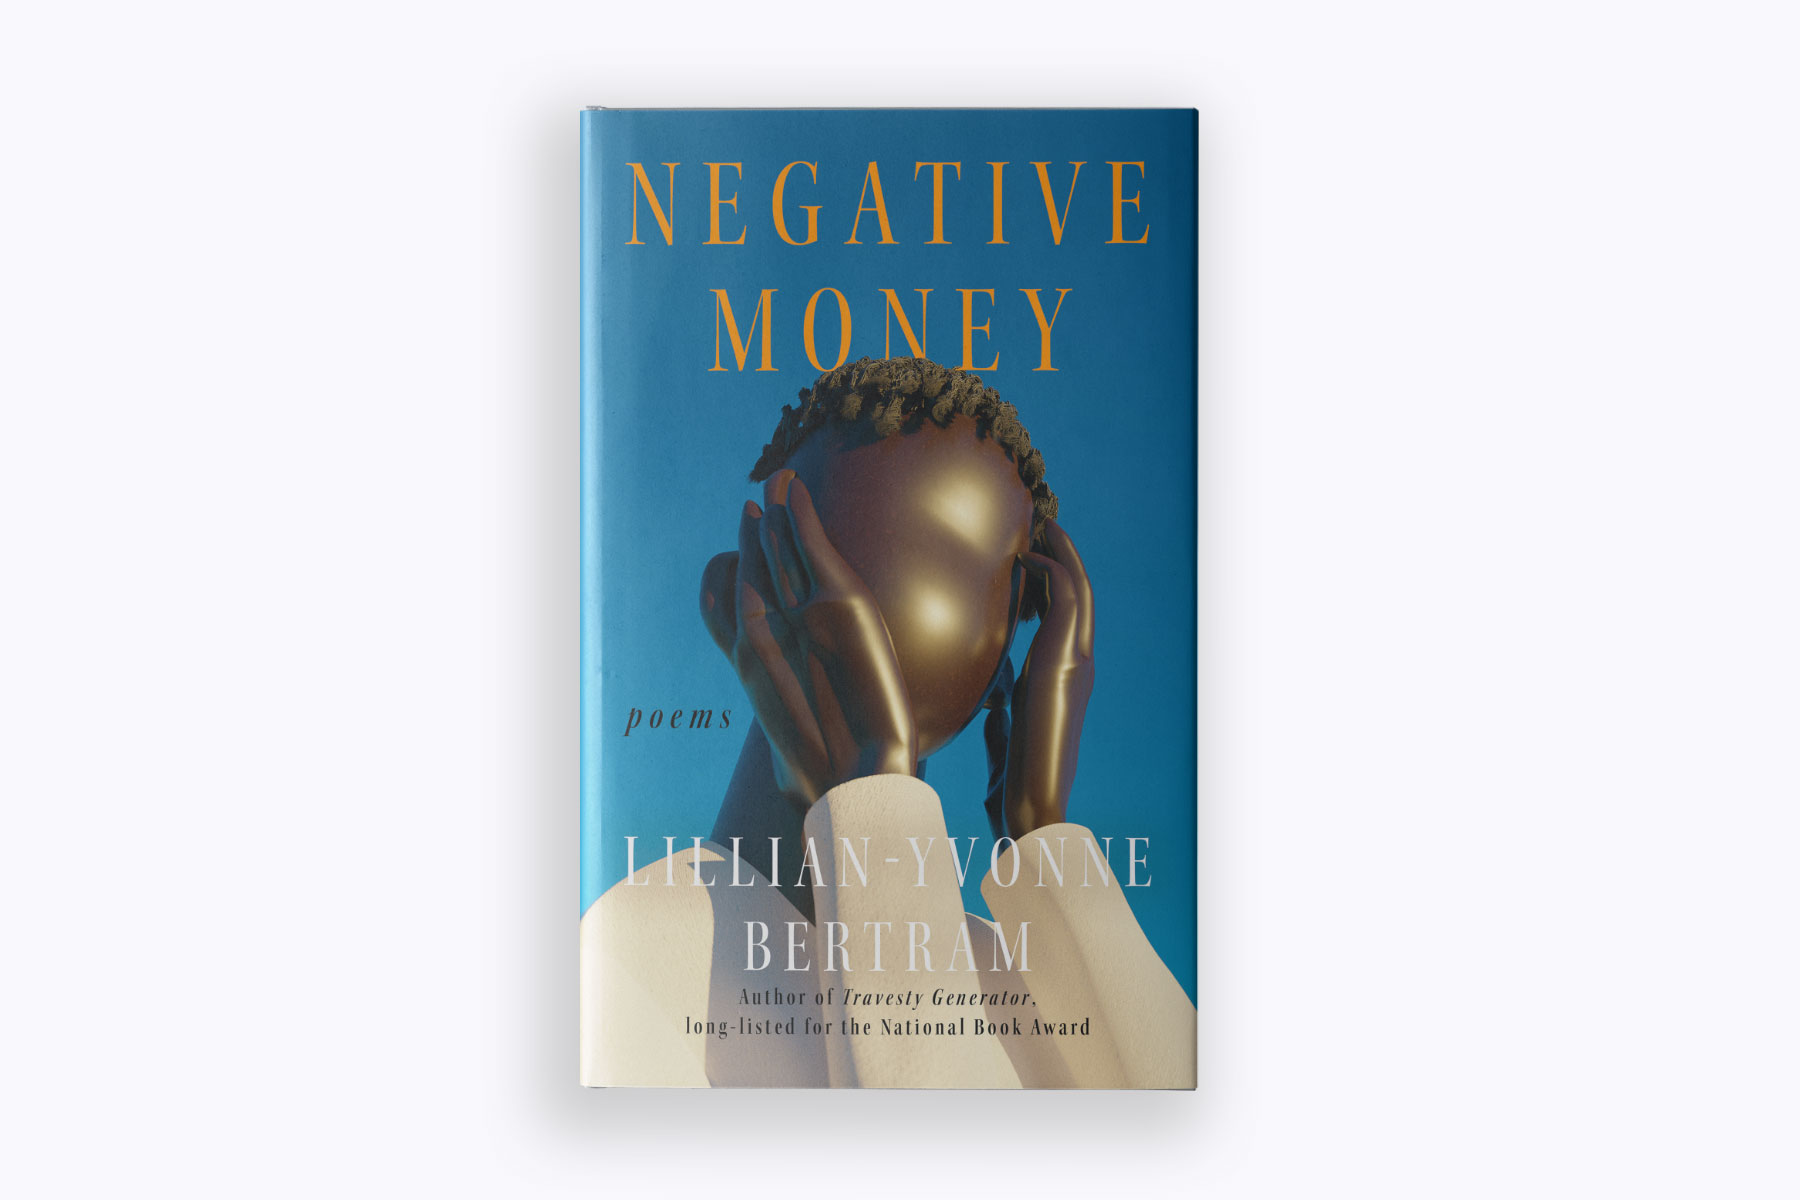 Lillian-Yvonne Bertram's book "Negative Money"